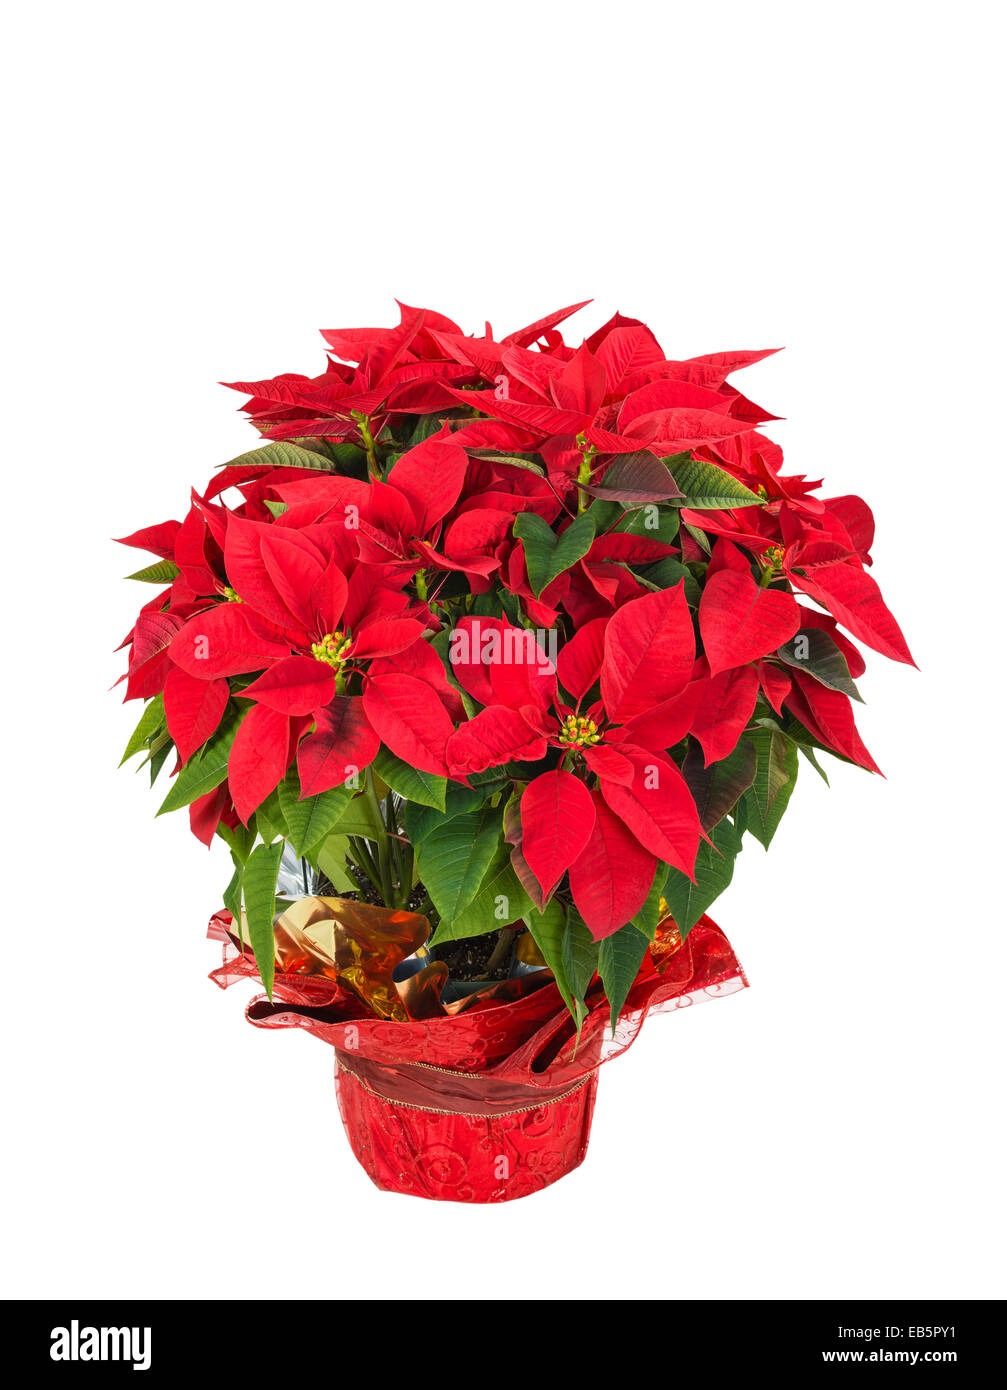 Red poinsettia (Euphorbia pulcherrima), alias l'étoile de Noël, dans un pot de fleurs de fête, isolé sur fond blanc Banque D'Images